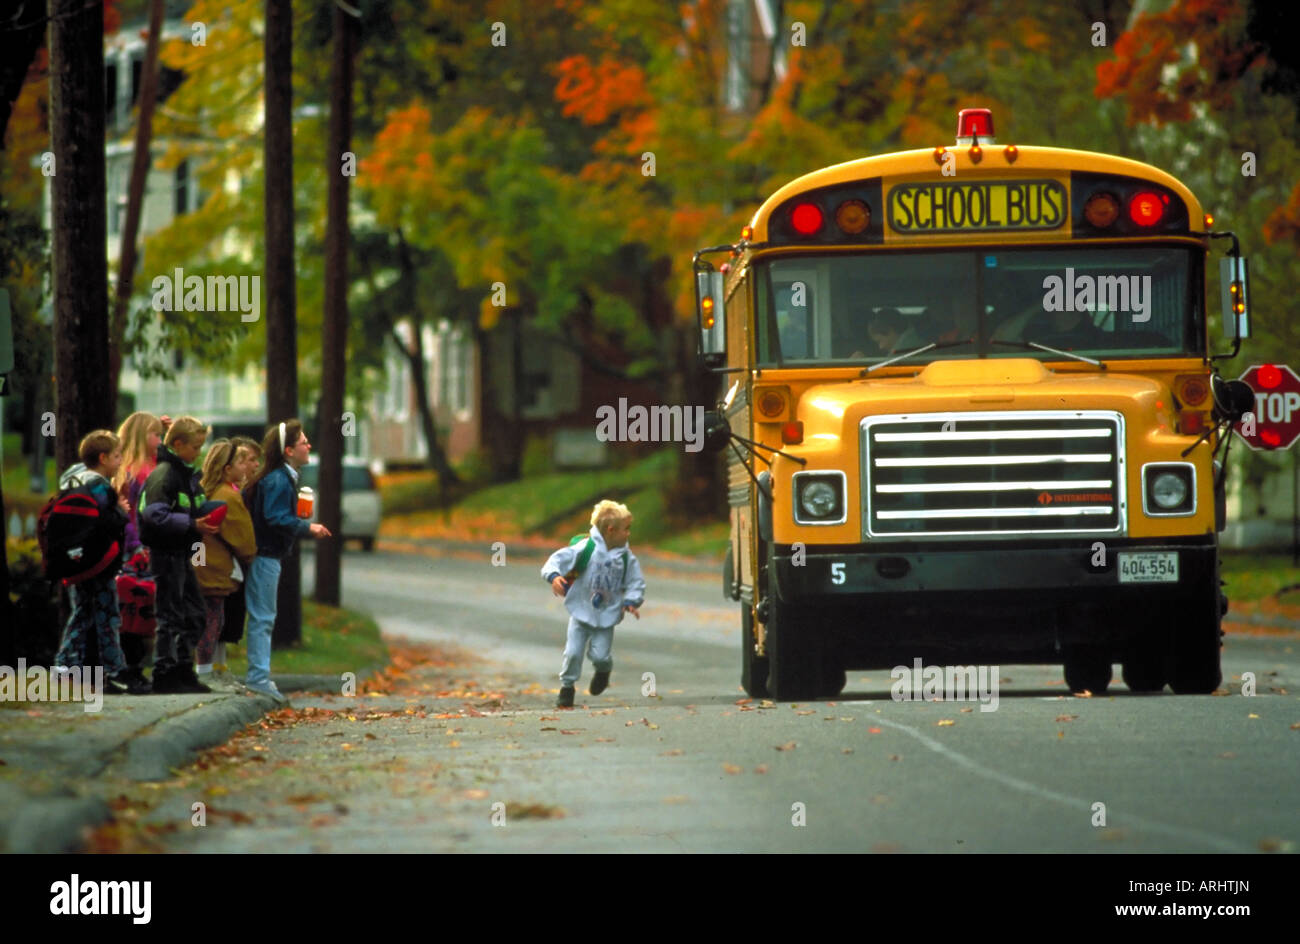 Kinder in der Schule Bushaltestelle Stockfoto